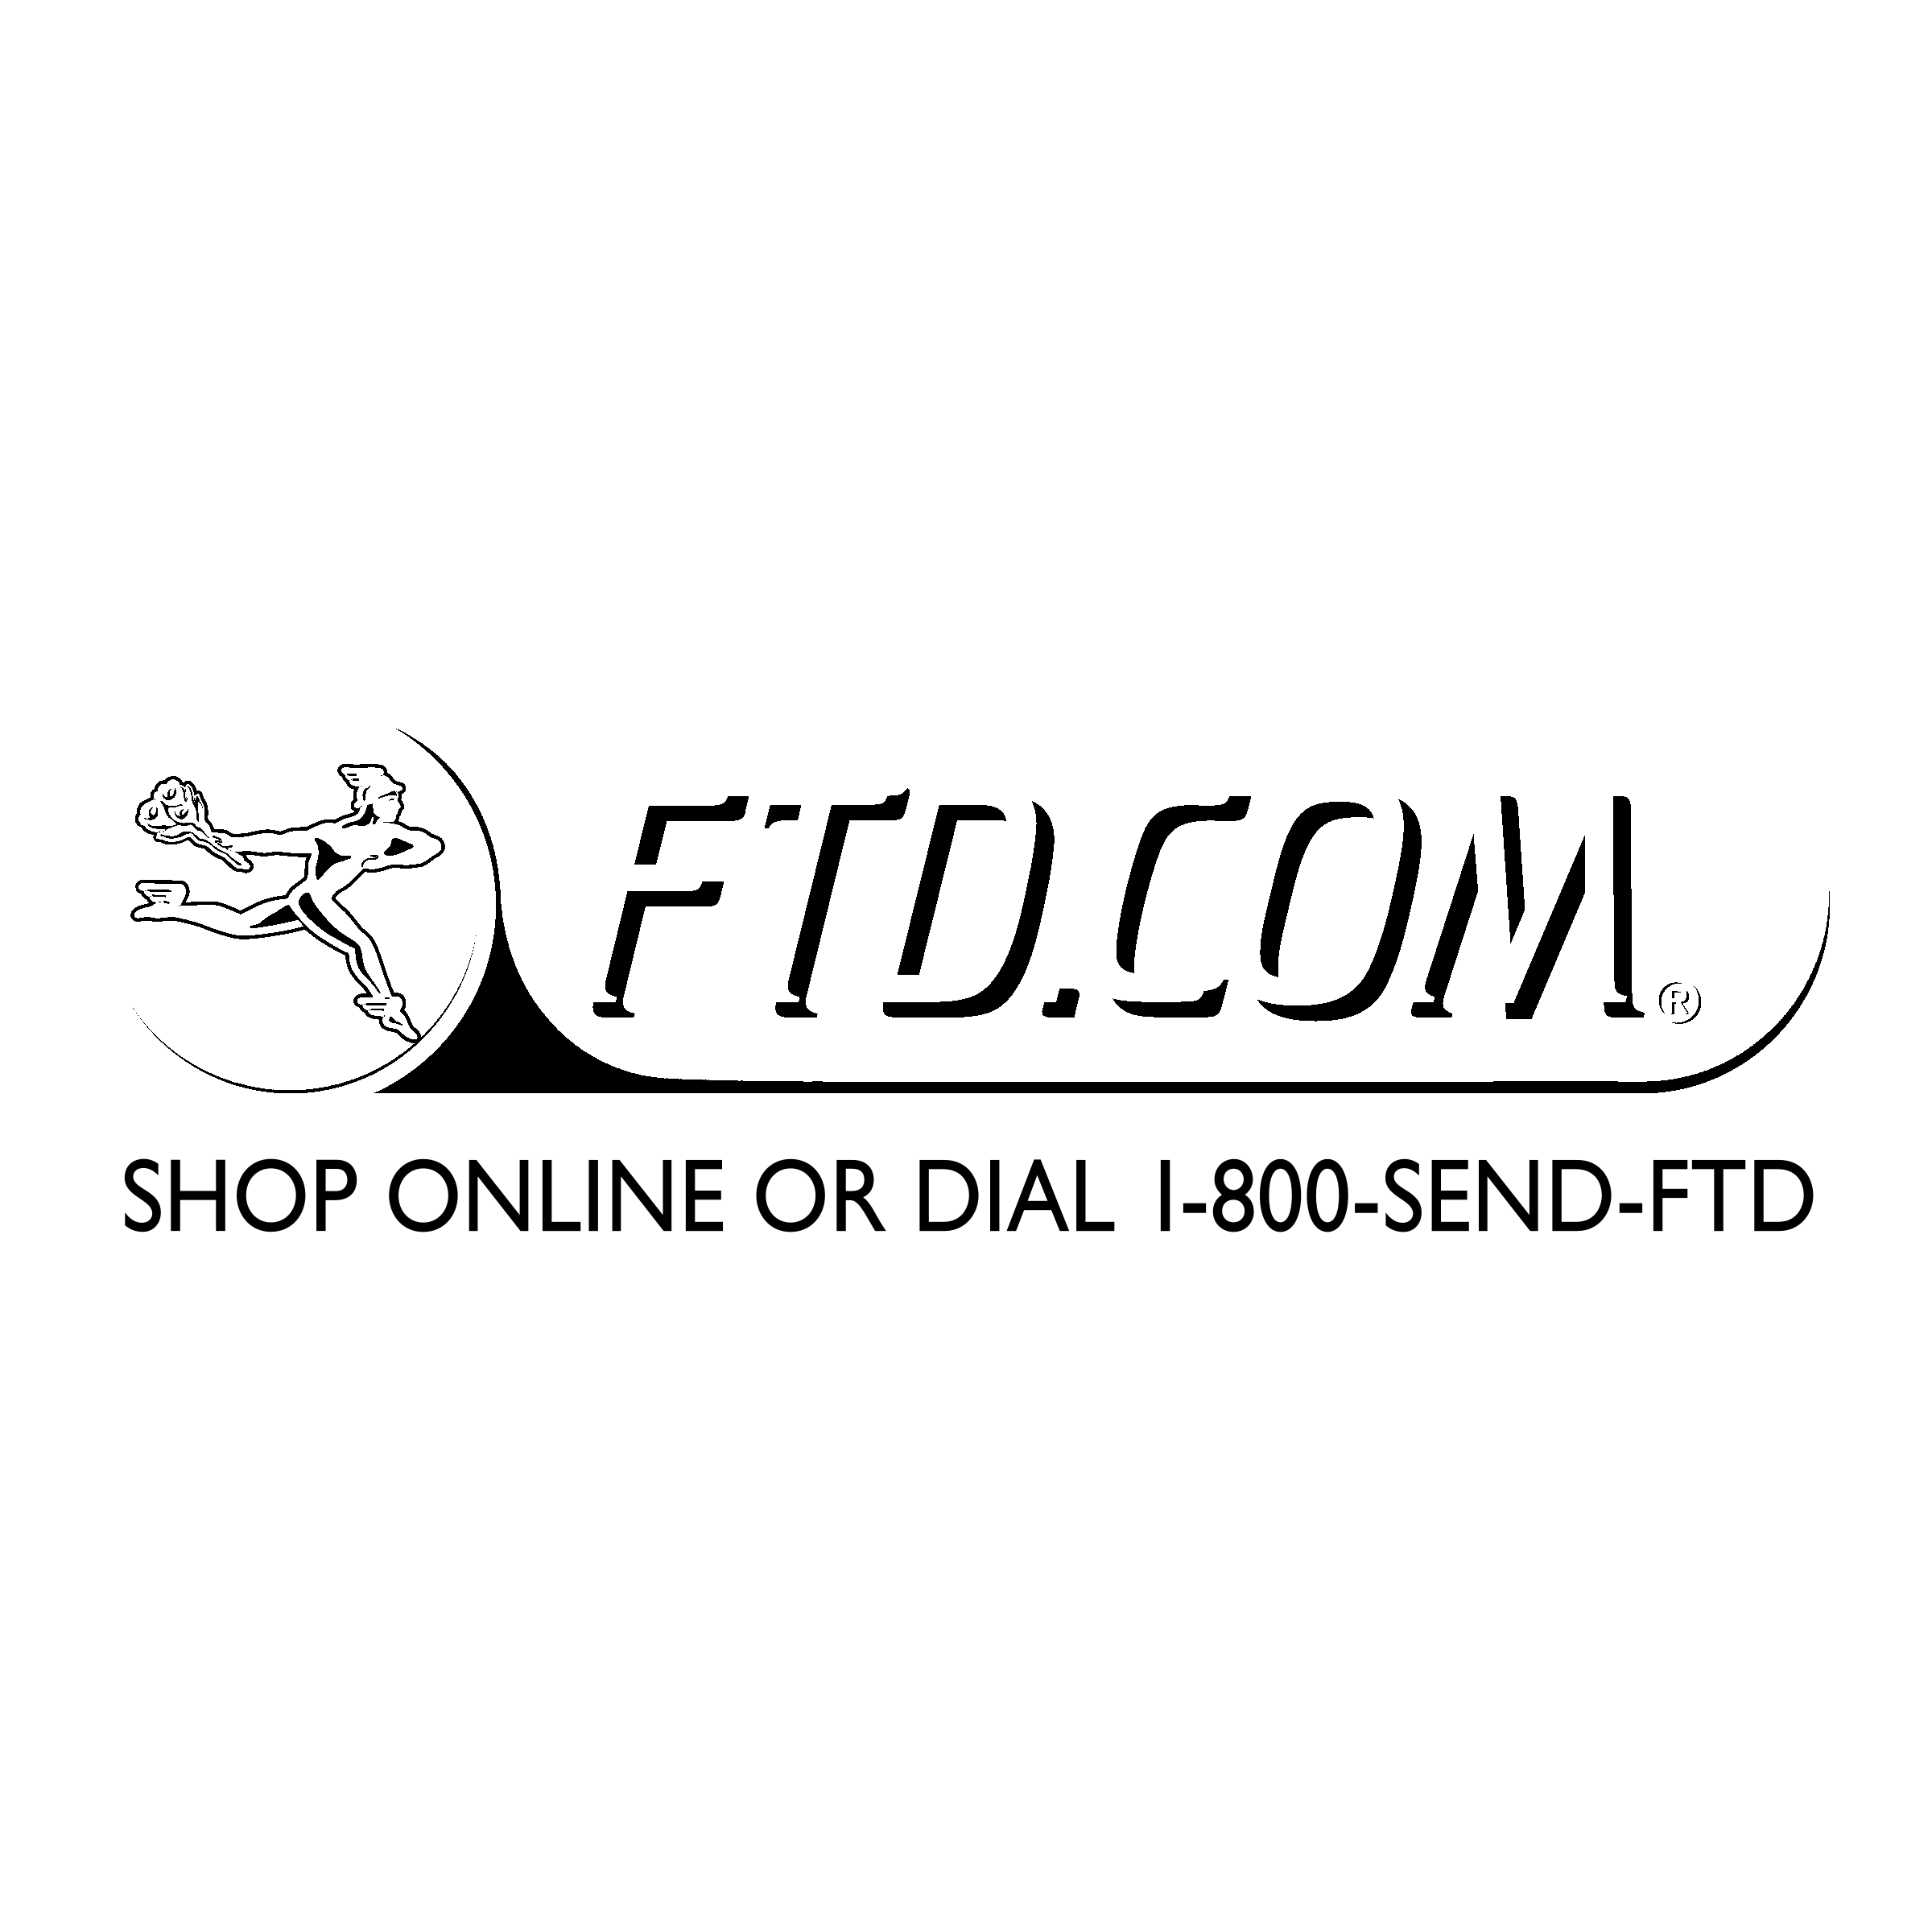 FTD.com Logo - FTD com Logo PNG Transparent & SVG Vector - Freebie Supply